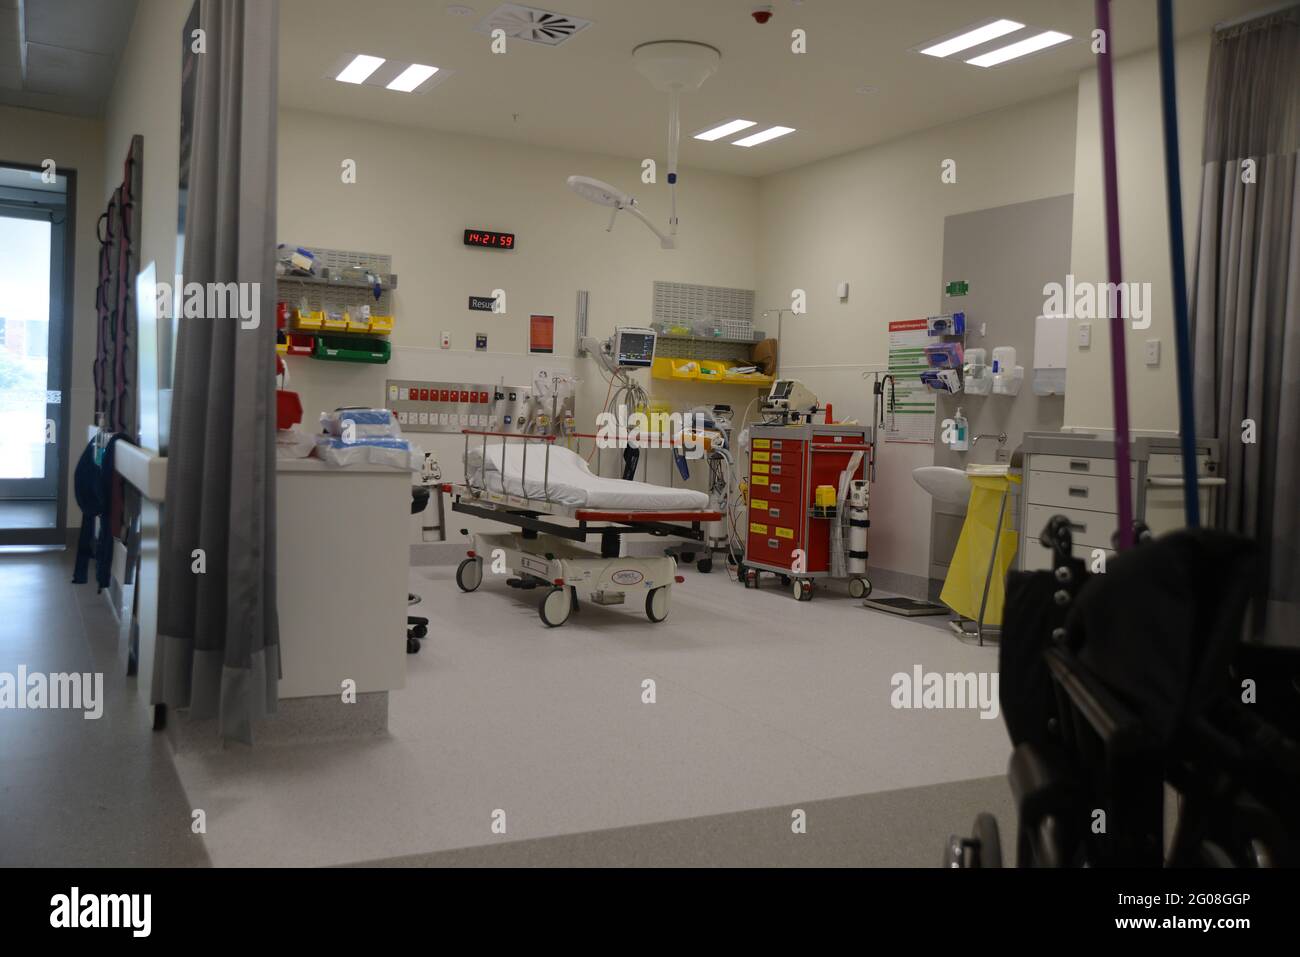 GREYMOUTH, NOUVELLE-ZÉLANDE, 19 janvier 2021 : la salle d'urgence attend les patients au bâtiment de l'hôpital te Nikau à Greymouth, Nouvelle-Zélande, 19 janvier, Banque D'Images